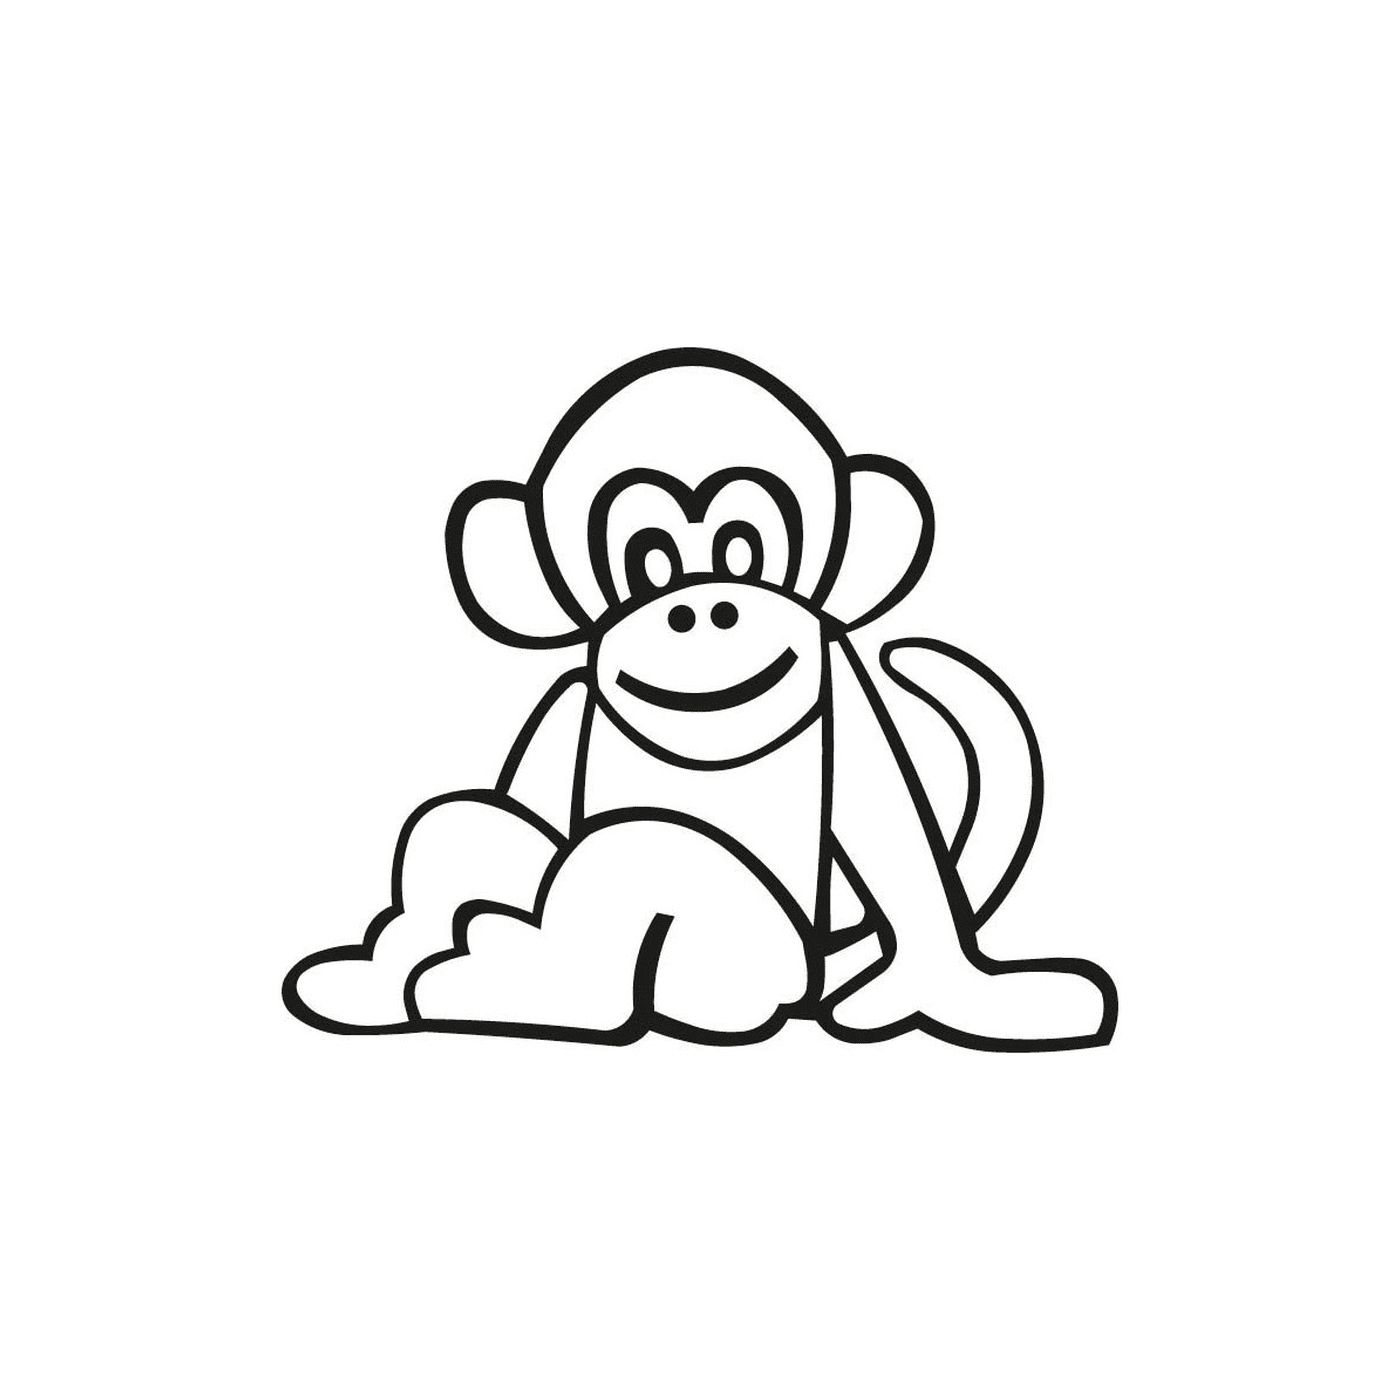  Monkey easy to draw 